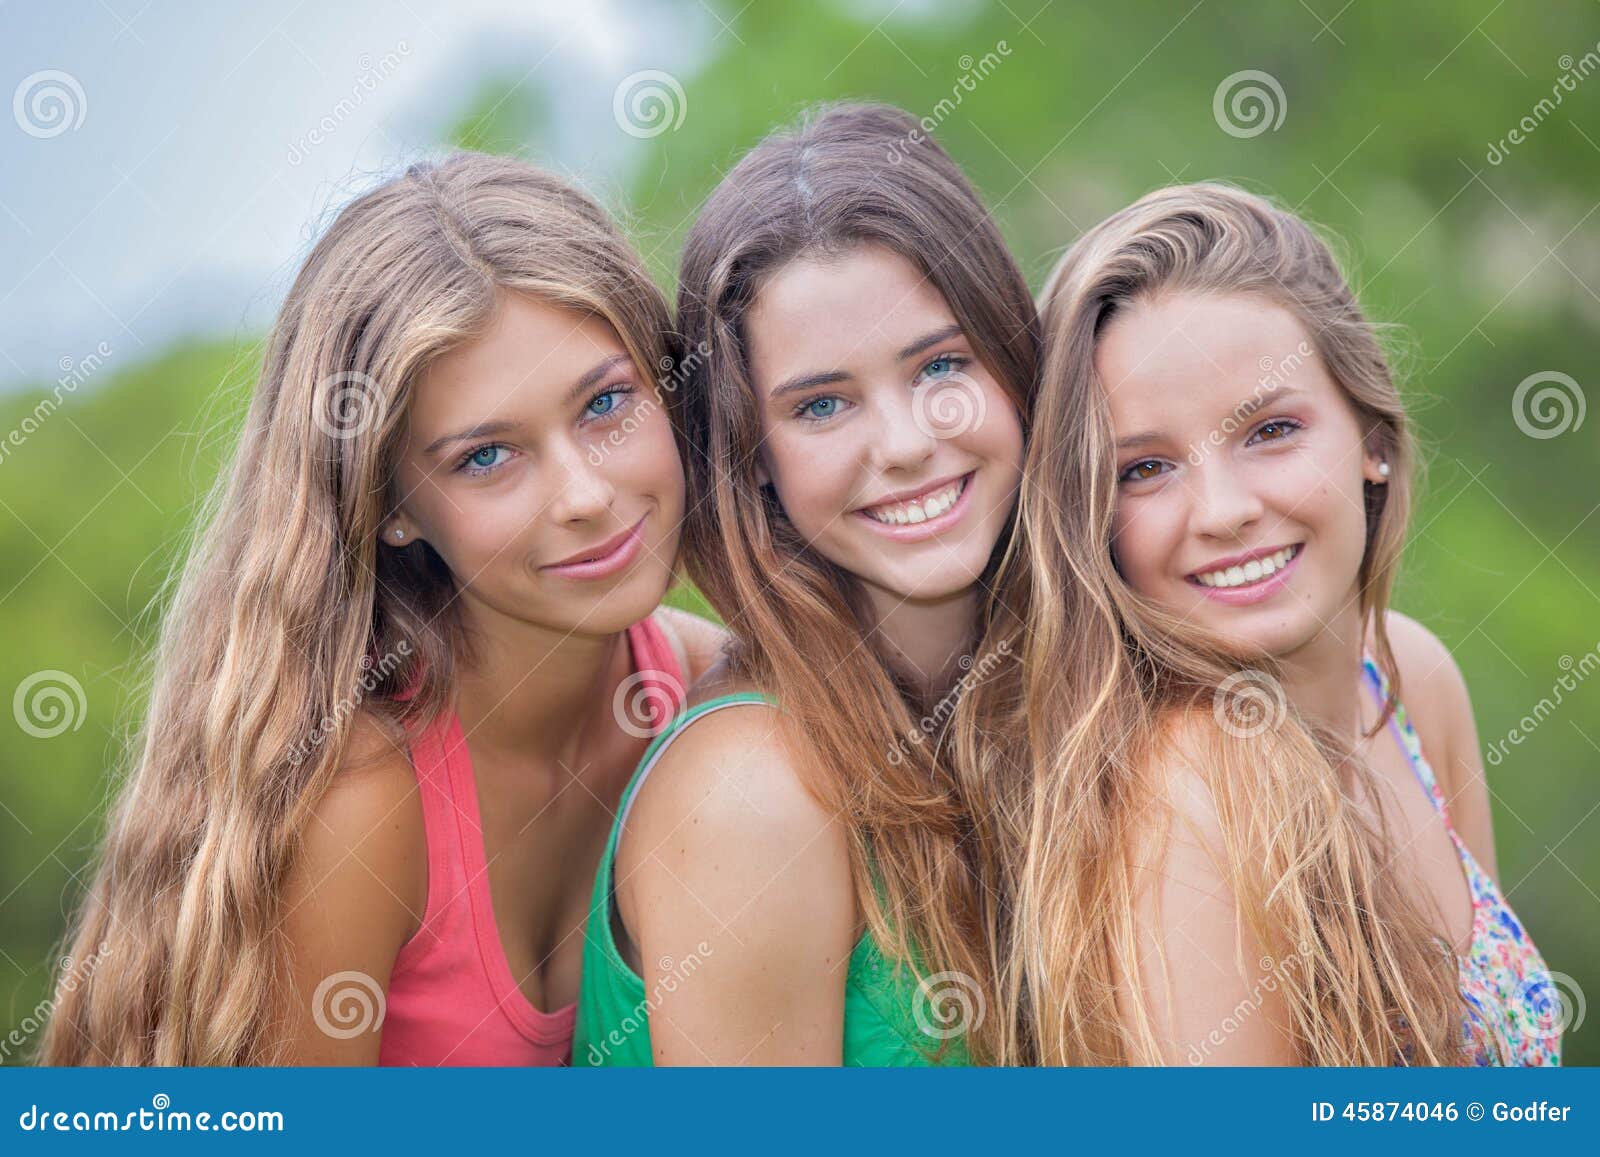 young girls teen